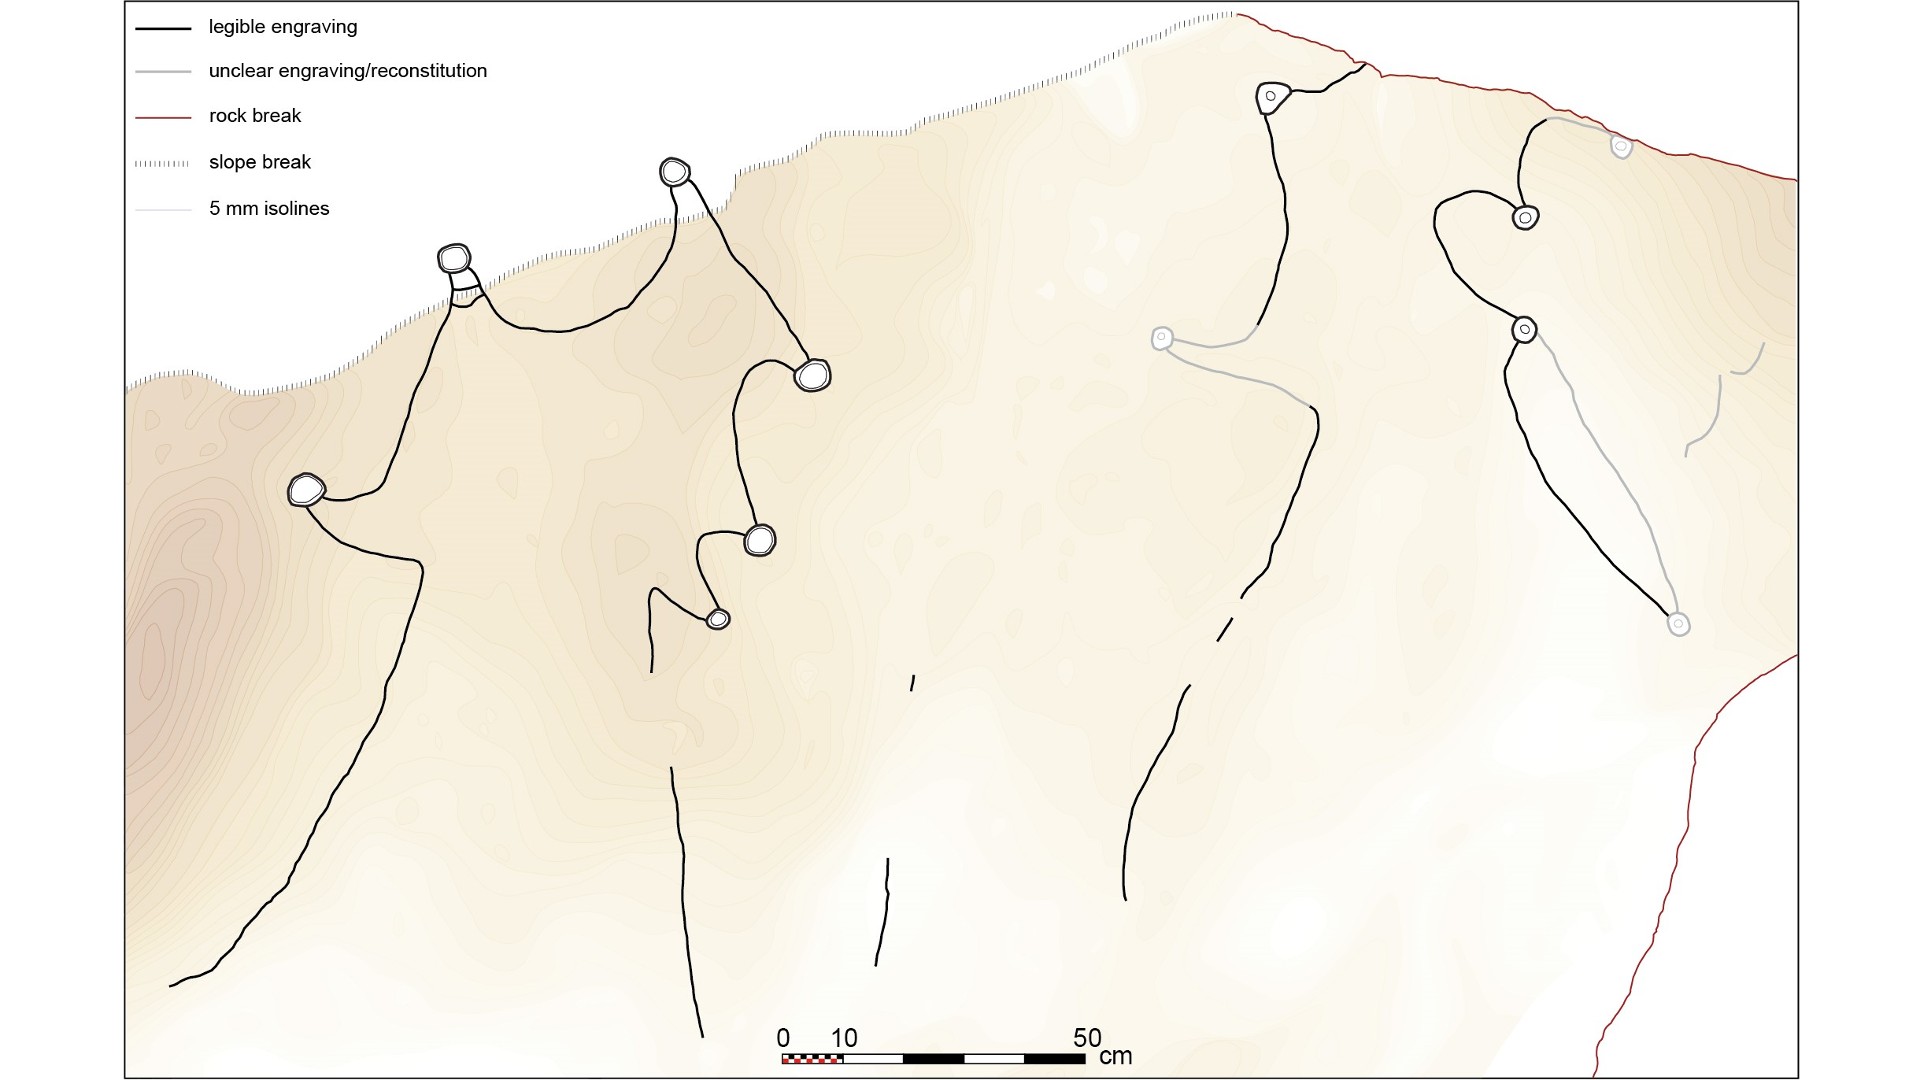 არაბეთში 8,000 წლის წინანდელი კლდეზე მოჩუქურთმებული ქანდაკებები შეიძლება იყოს მსოფლიოში უძველესი მეგასტრუქტურის გეგმა 4